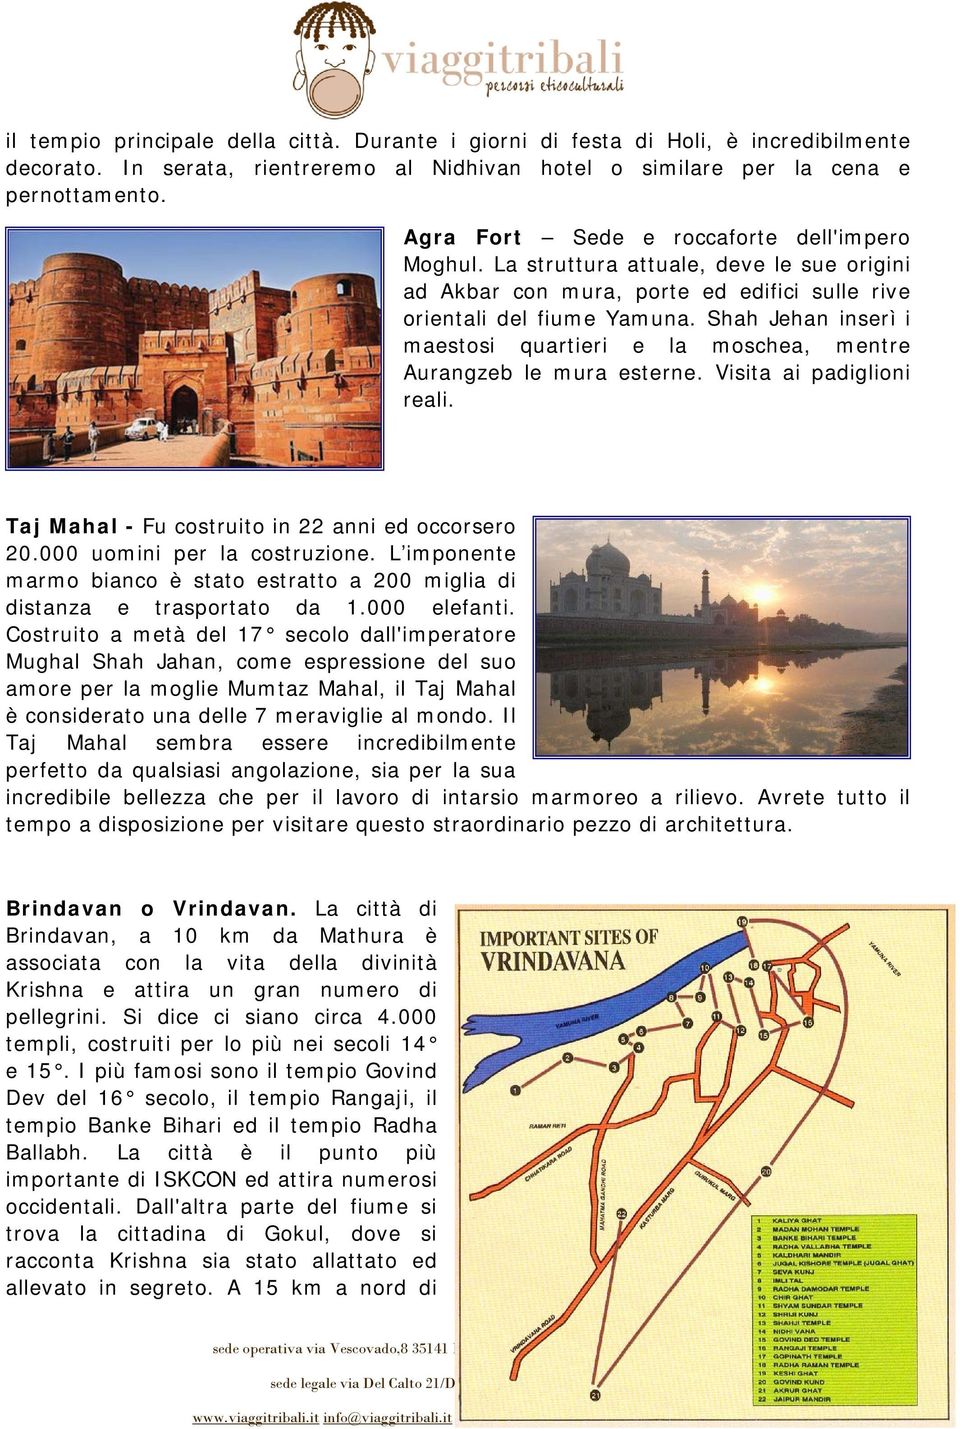 Shah Jehan inserì i maestosi quartieri e la moschea, mentre Aurangzeb le mura esterne. Visita ai padiglioni reali. Taj Mahal - Fu costruito in 22 anni ed occorsero 20.000 uomini per la costruzione.